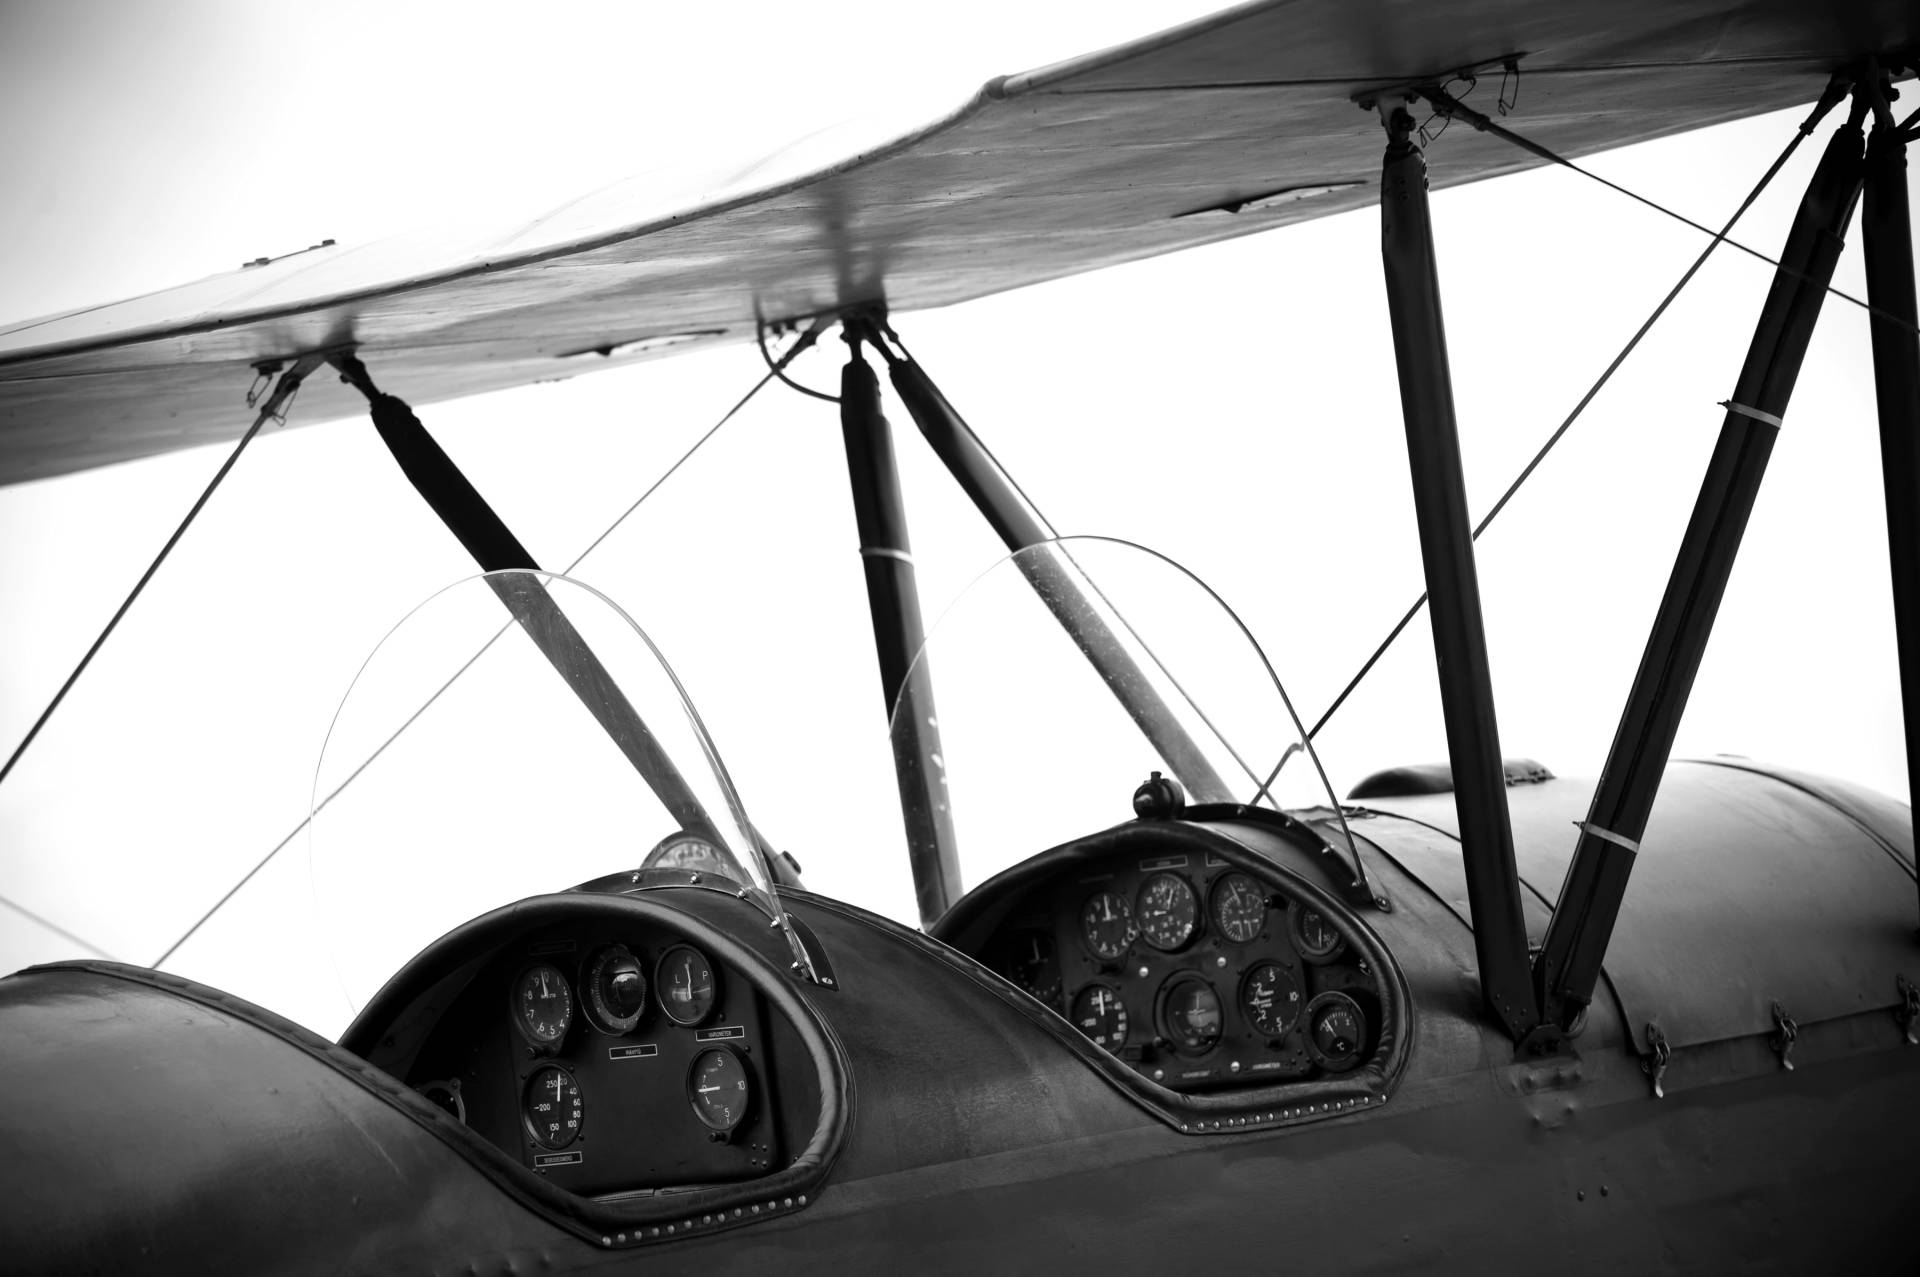 Papermoon Fototapete "Flugzeug Schwarz & Weiß" von Papermoon